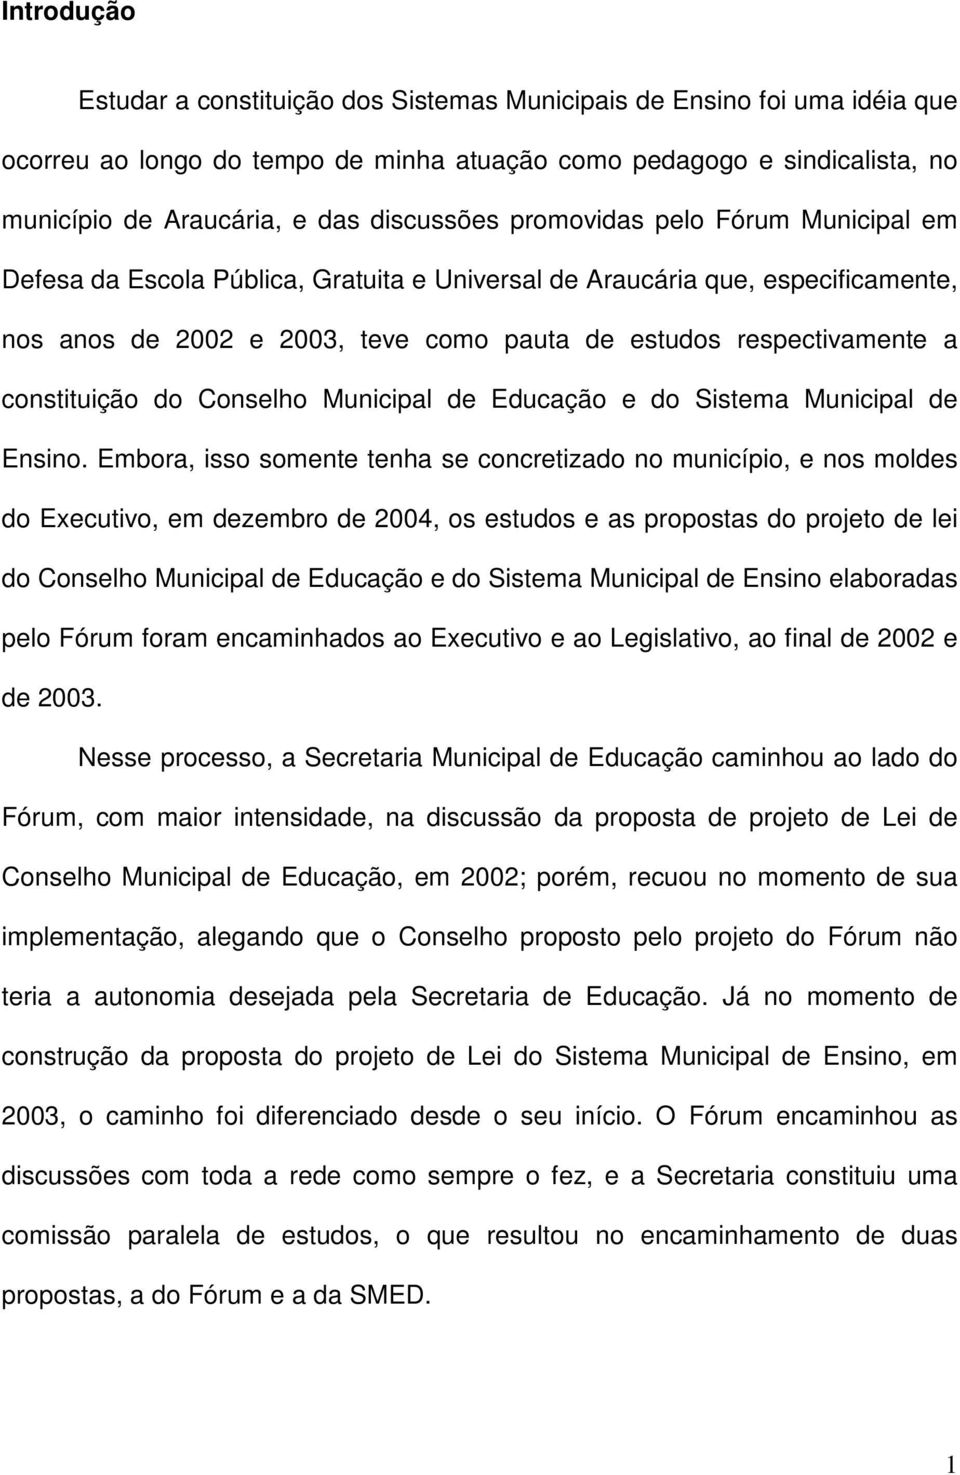 constituição do Conselho Municipal de Educação e do Sistema Municipal de Ensino.